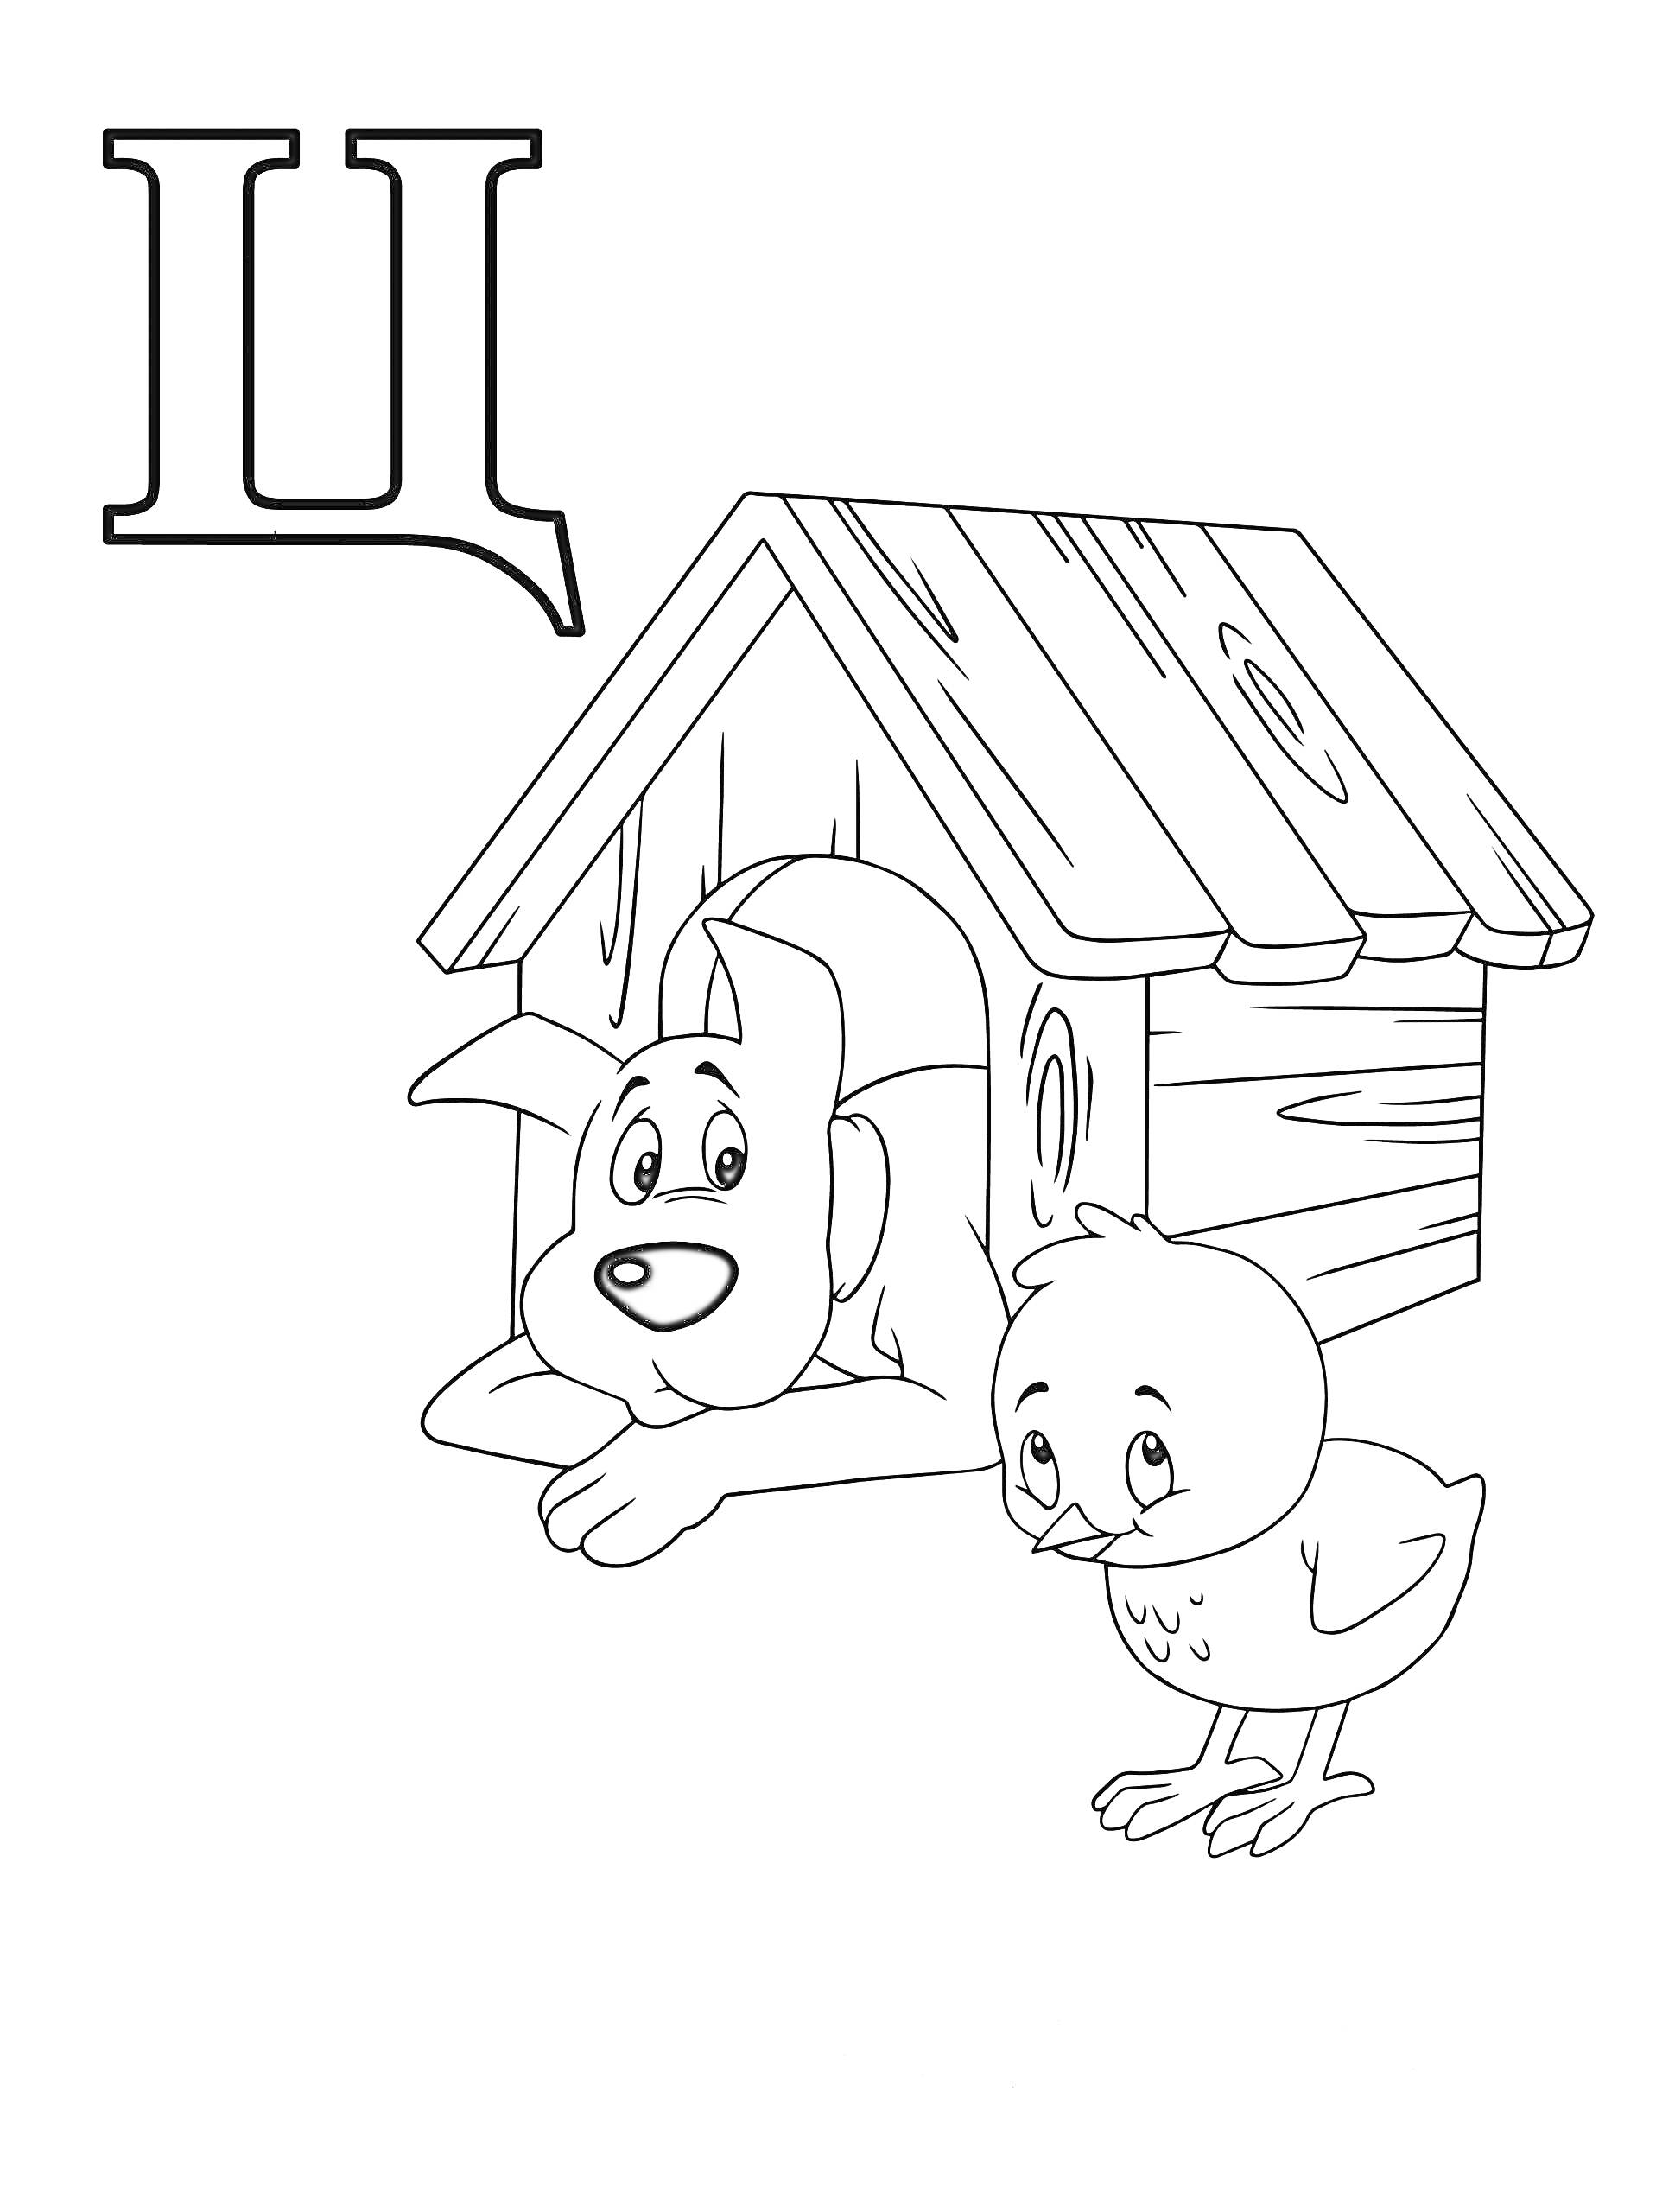 Буква Ц с изображением собаки у будки и цыпленка